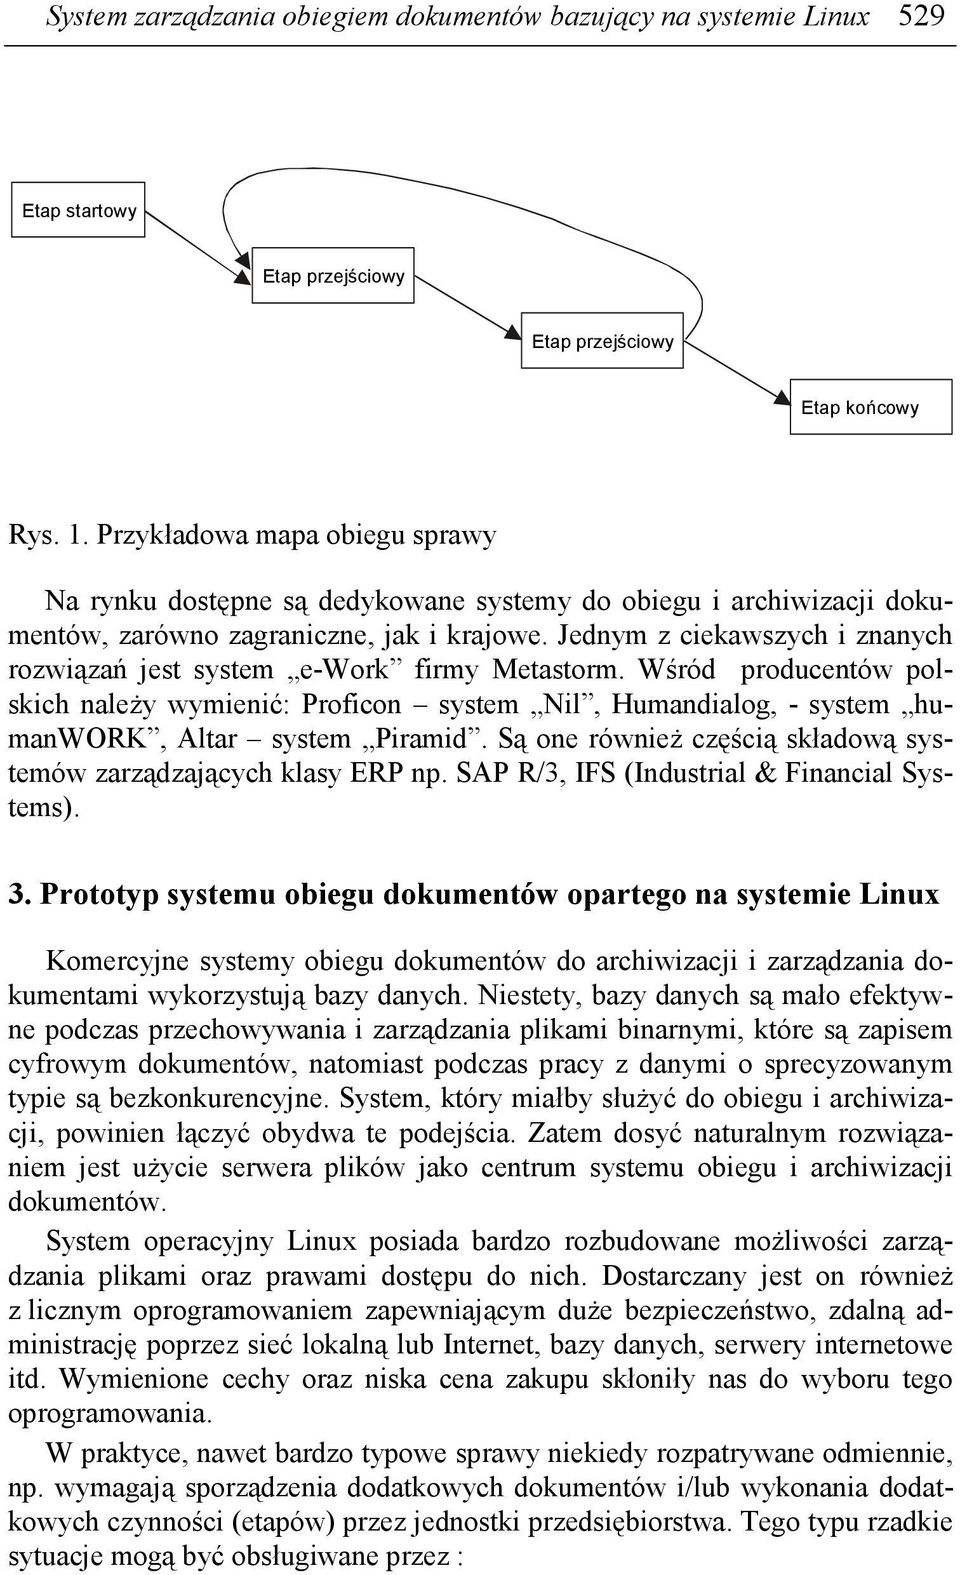 Jednym z ciekawszych i znanych rozwiązań jest system e-work firmy Metastorm. Wśród producentów polskich naleŝy wymienić: Proficon system Nil, Humandialog, - system humanwork, Altar system Piramid.